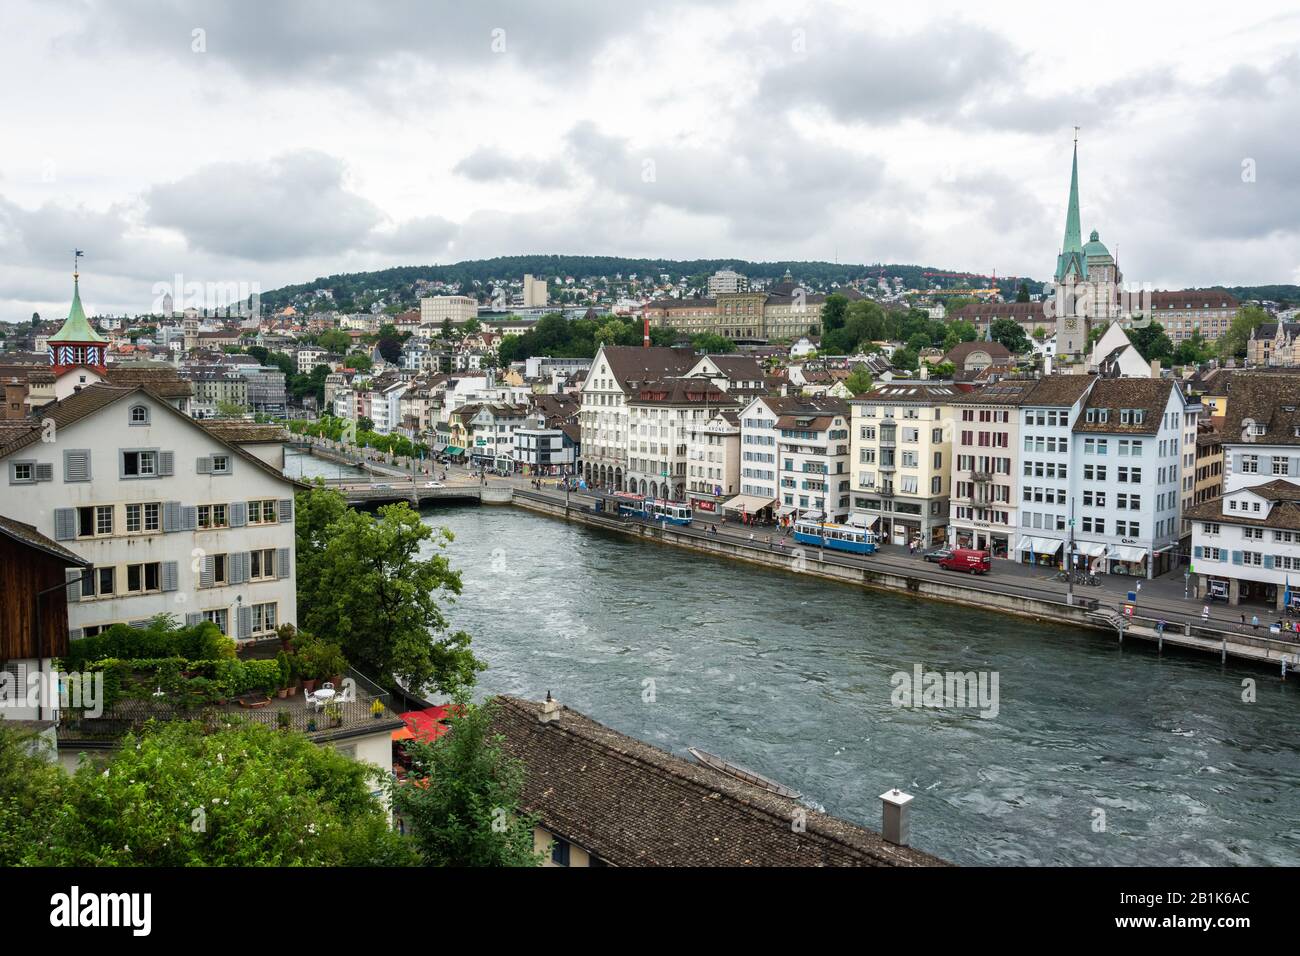 Zurigo, Svizzera – 25 Giugno 2016. Vista sul centro di Zurigo, con edifici storici, il traffico cittadino e la gente. Foto Stock